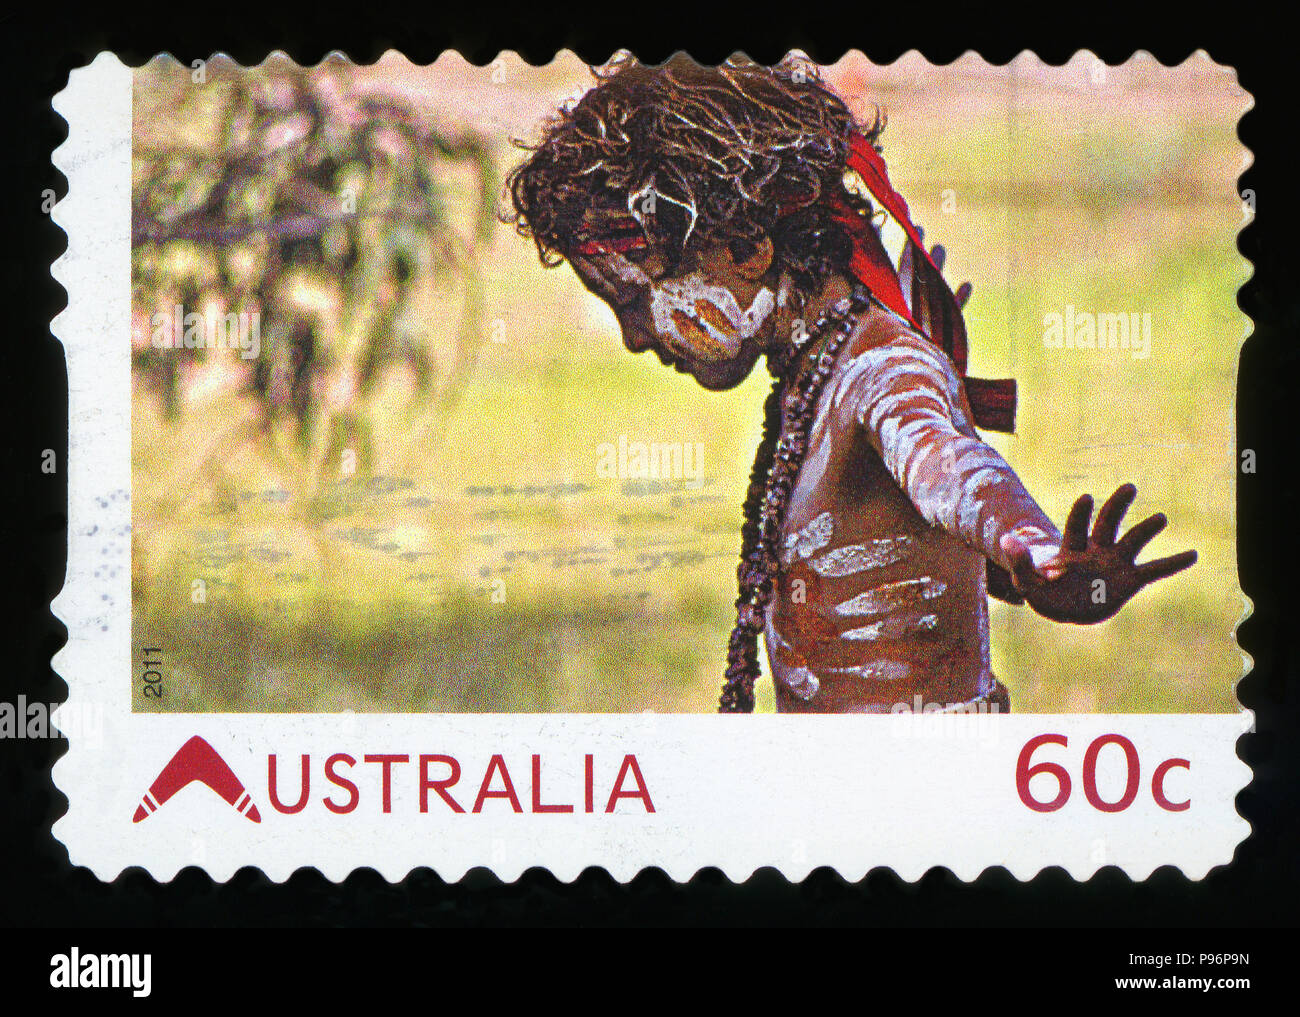 L'AUSTRALIE - circa 2011:un timbre-poste de l'Australie montre garçon autochtones, publié en 2011. Banque D'Images